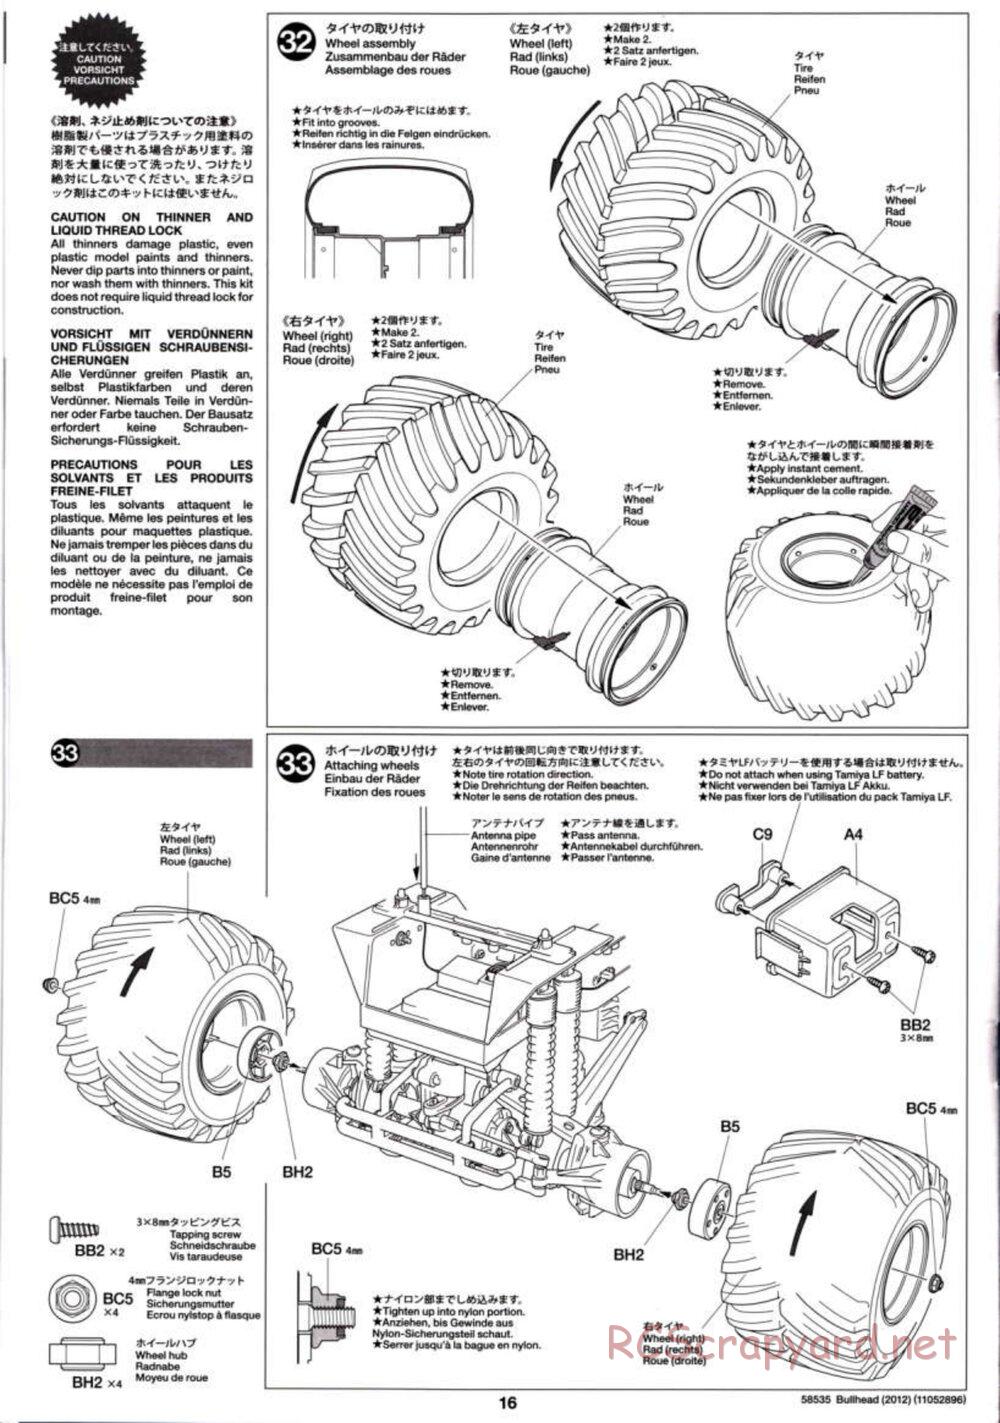 Tamiya - Bullhead 2012 - CB Chassis - Manual - Page 16